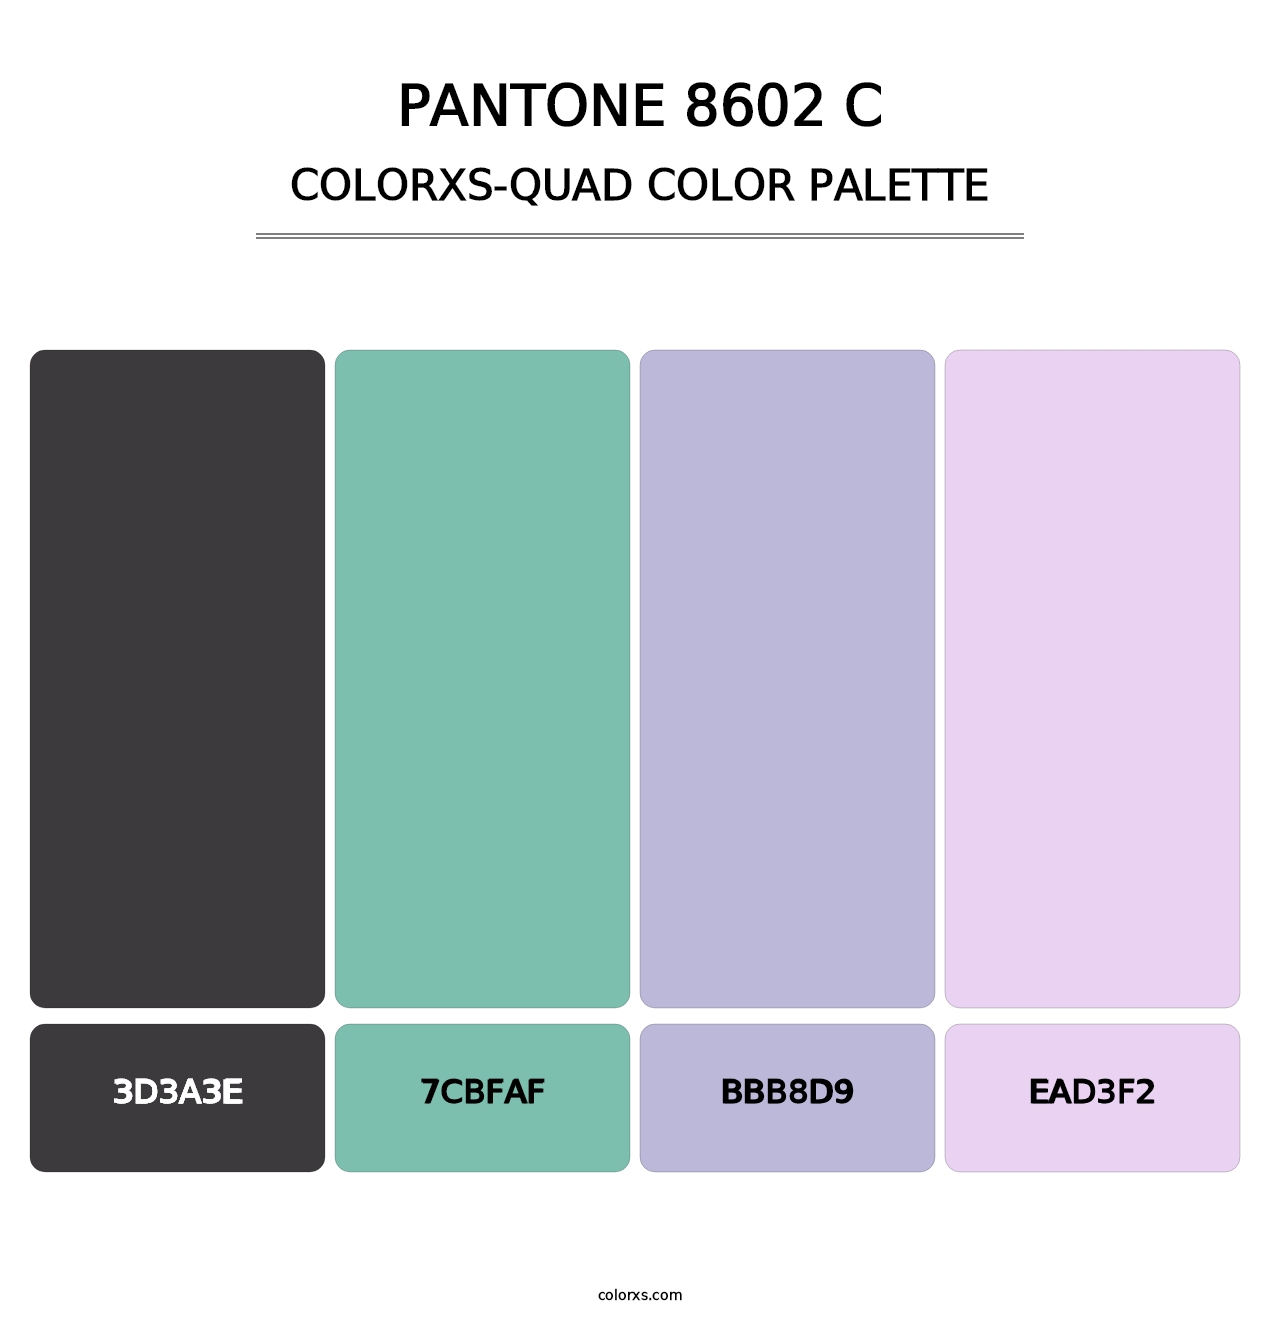 PANTONE 8602 C - Colorxs Quad Palette